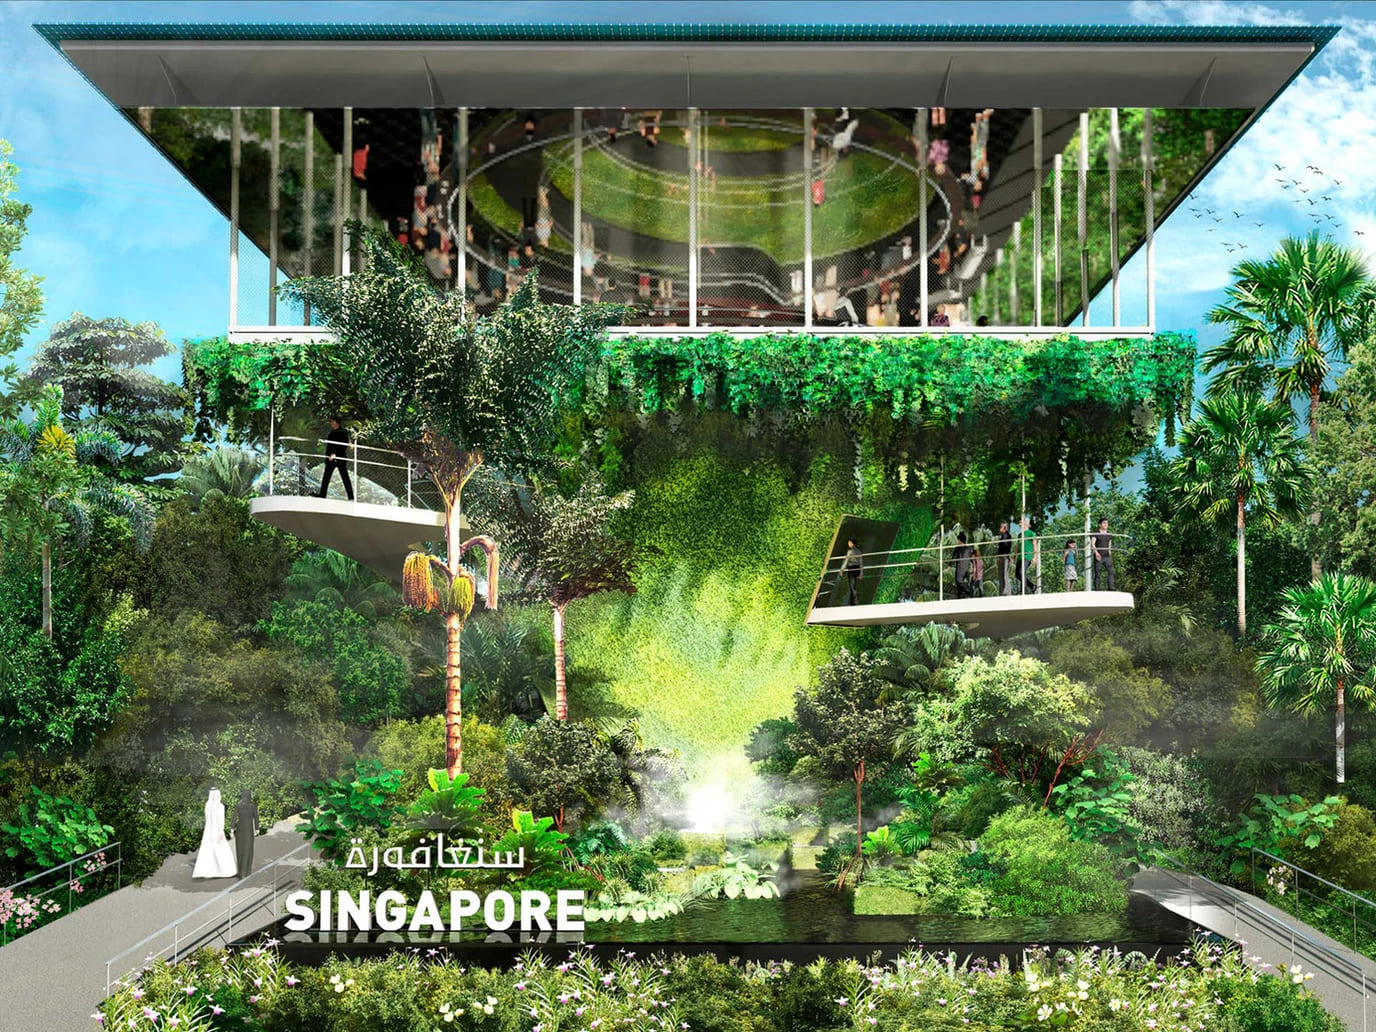 Павильон Сингапура, спроектированный бюро WOHA Architects